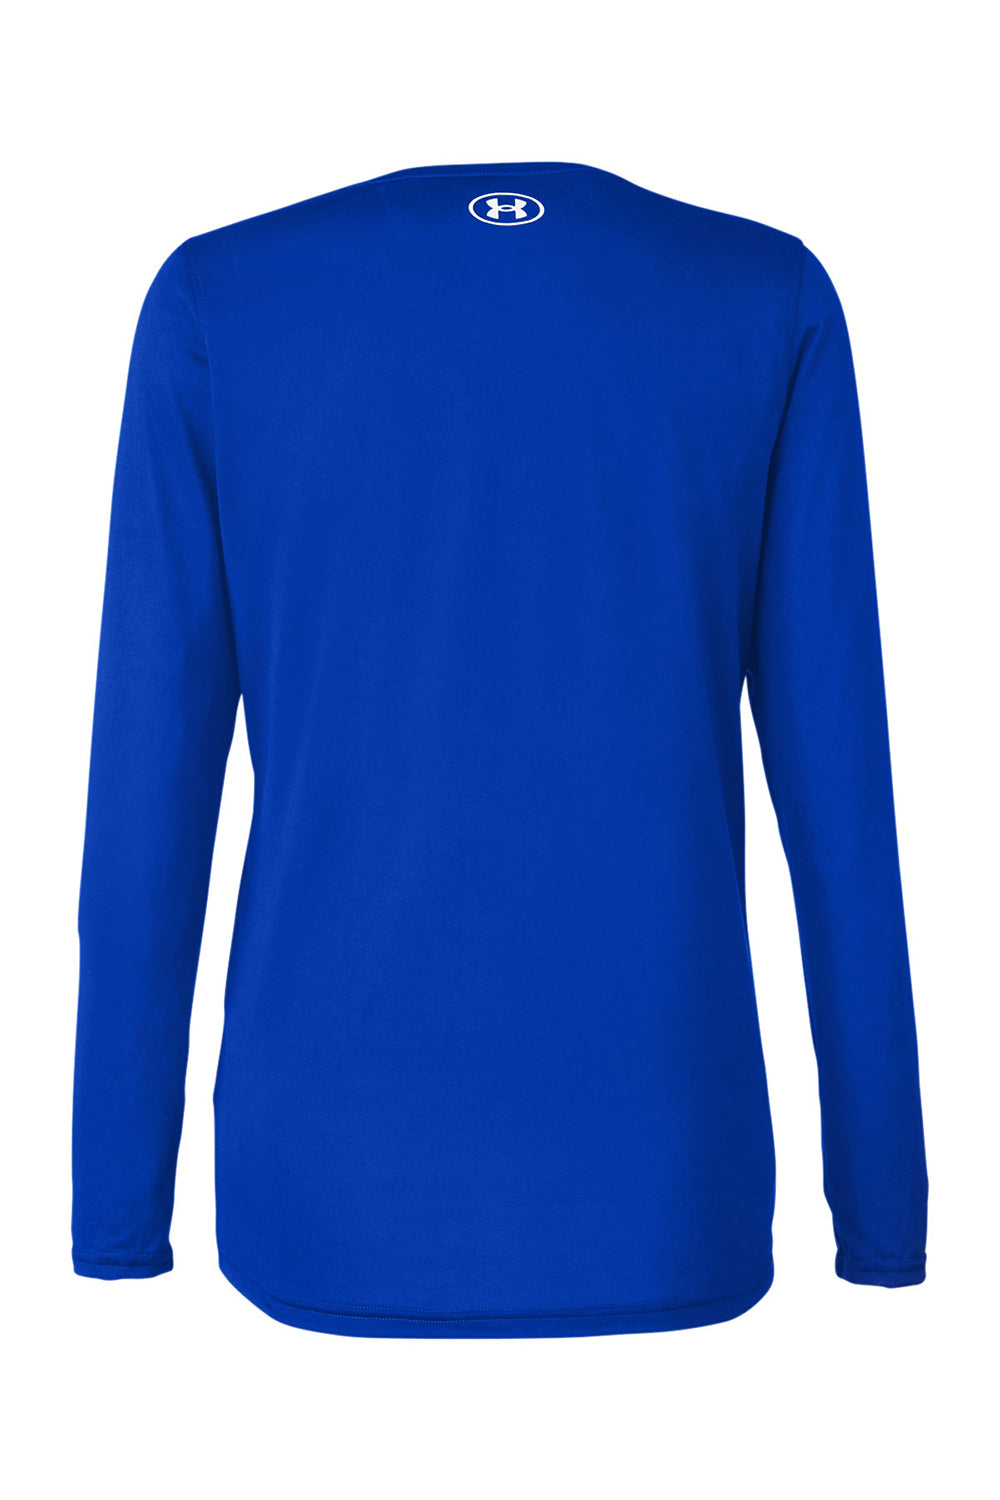 Under Armour 1376852 Womens Team Tech Moisture Wicking Long Sleeve Crewneck T-Shirt Royal Blue Flat Back